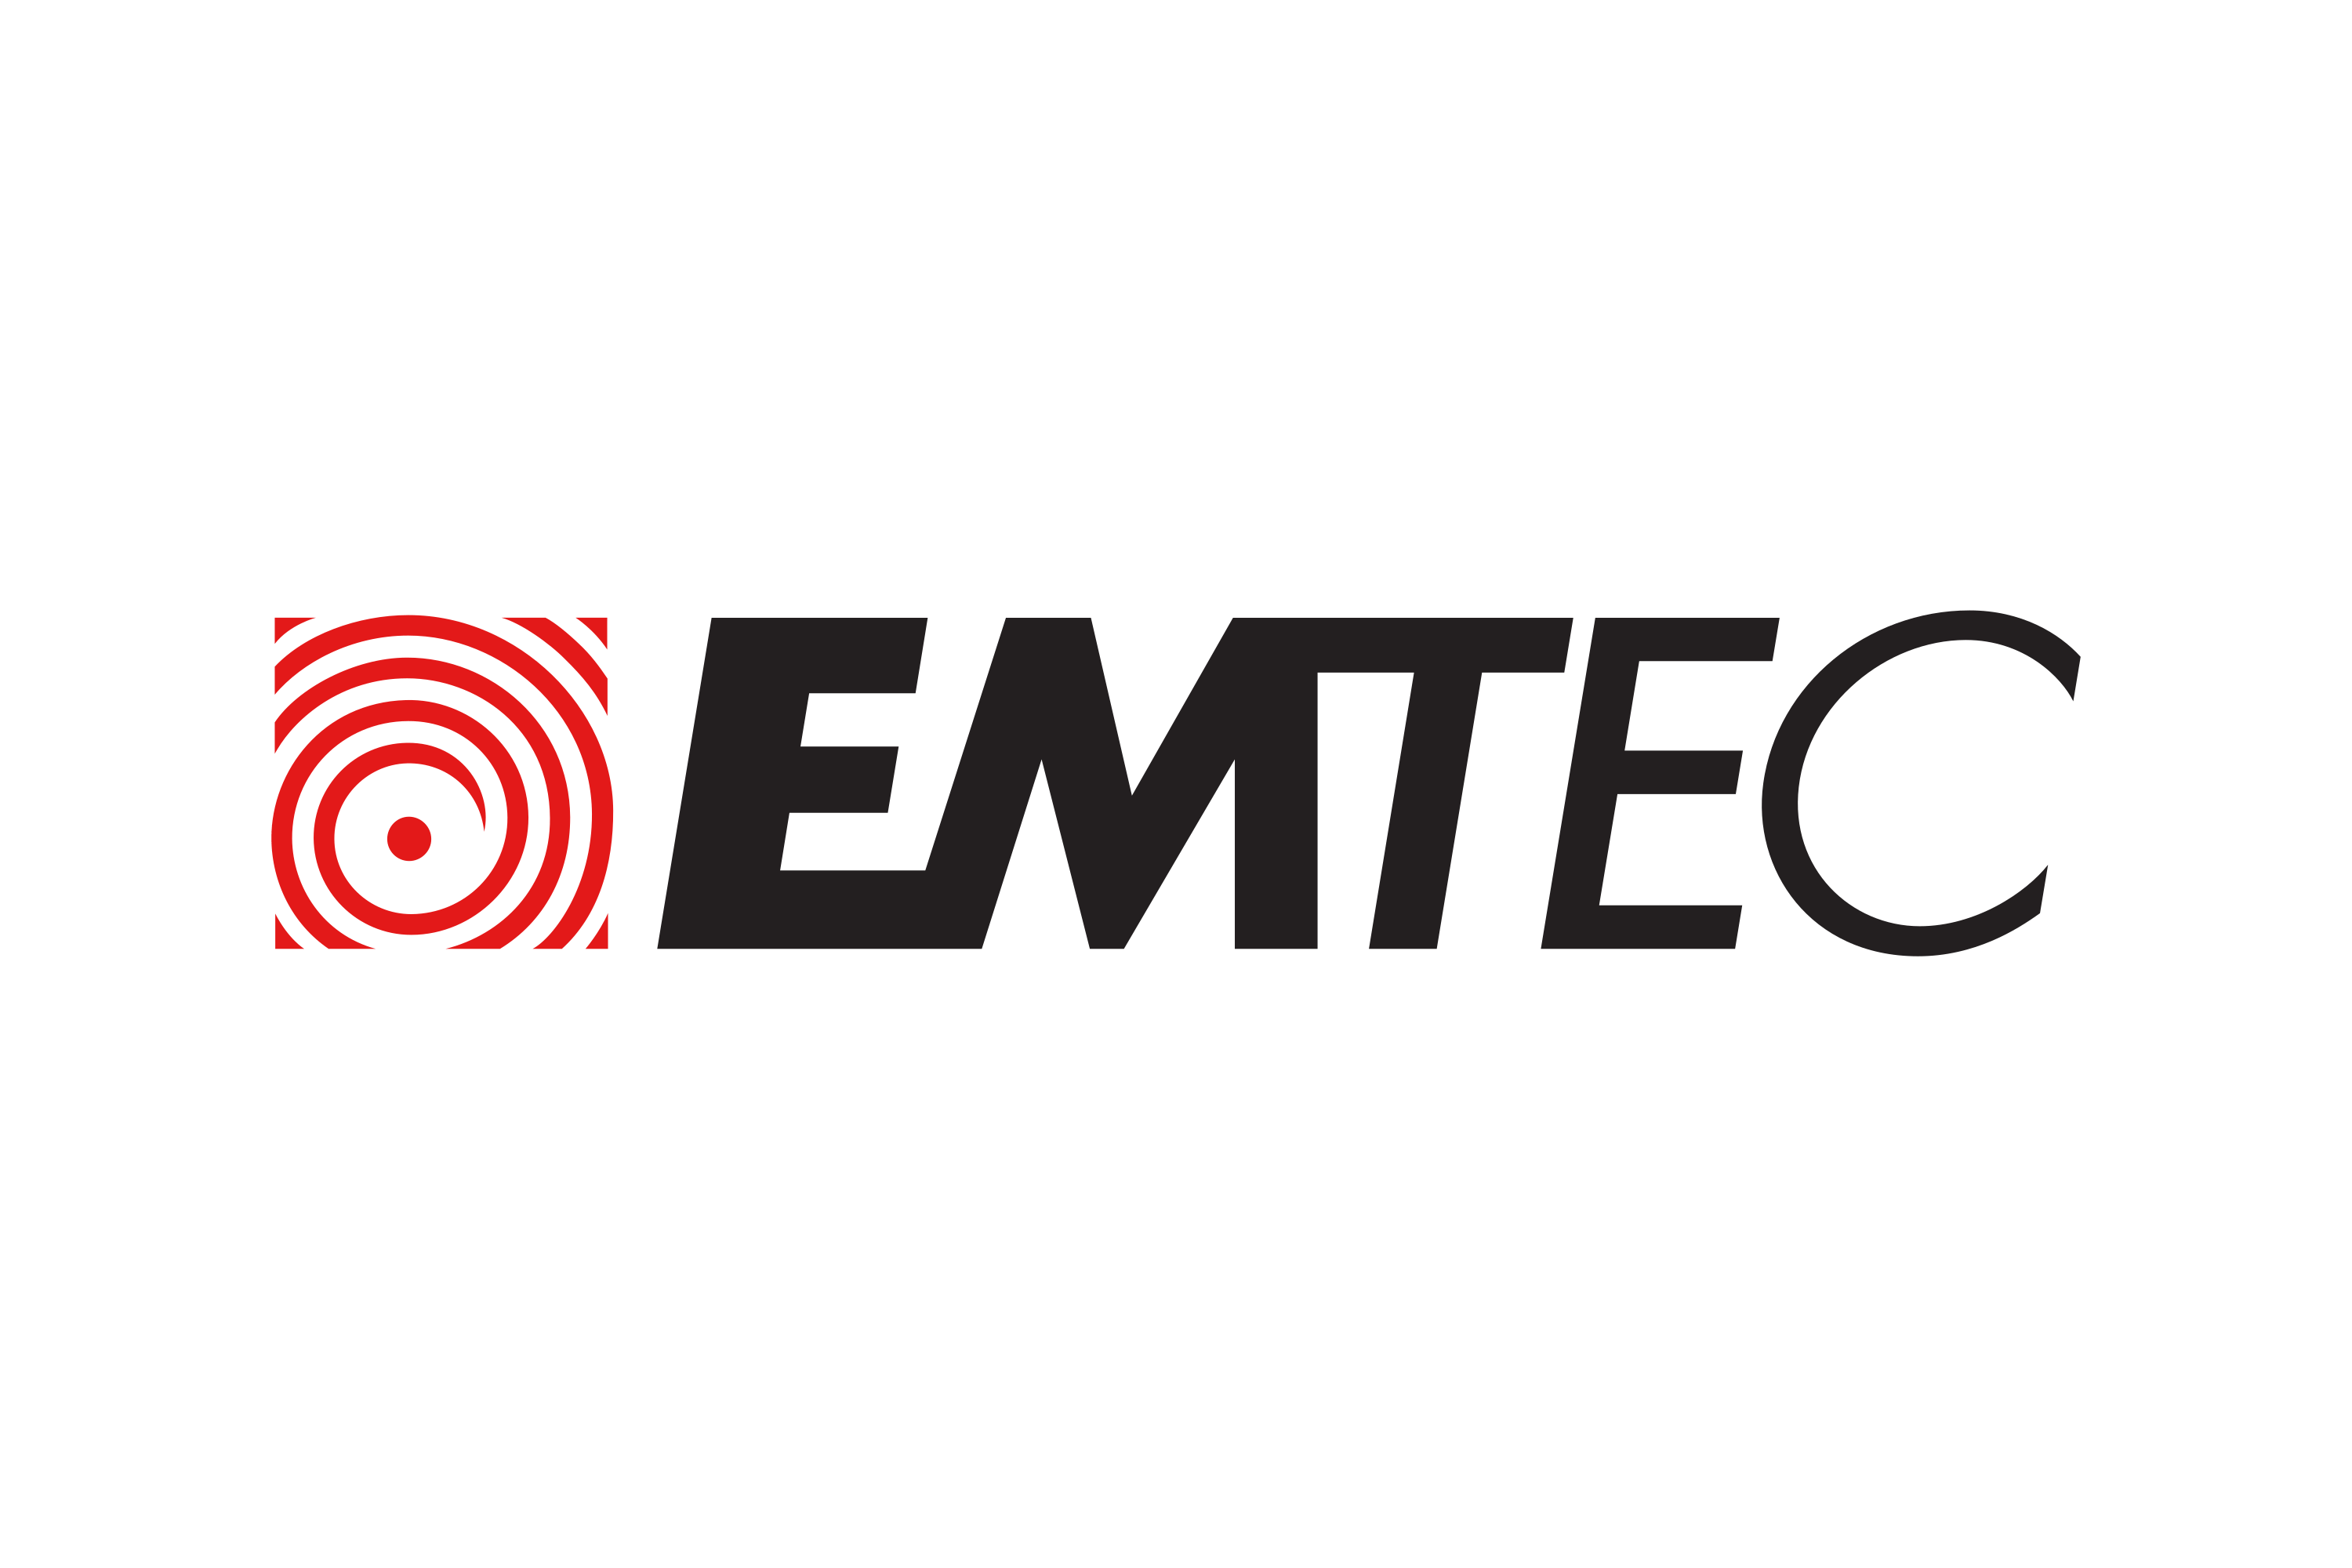 Download EMTEC Logo in SVG Vector or PNG File Format - Logo.wine